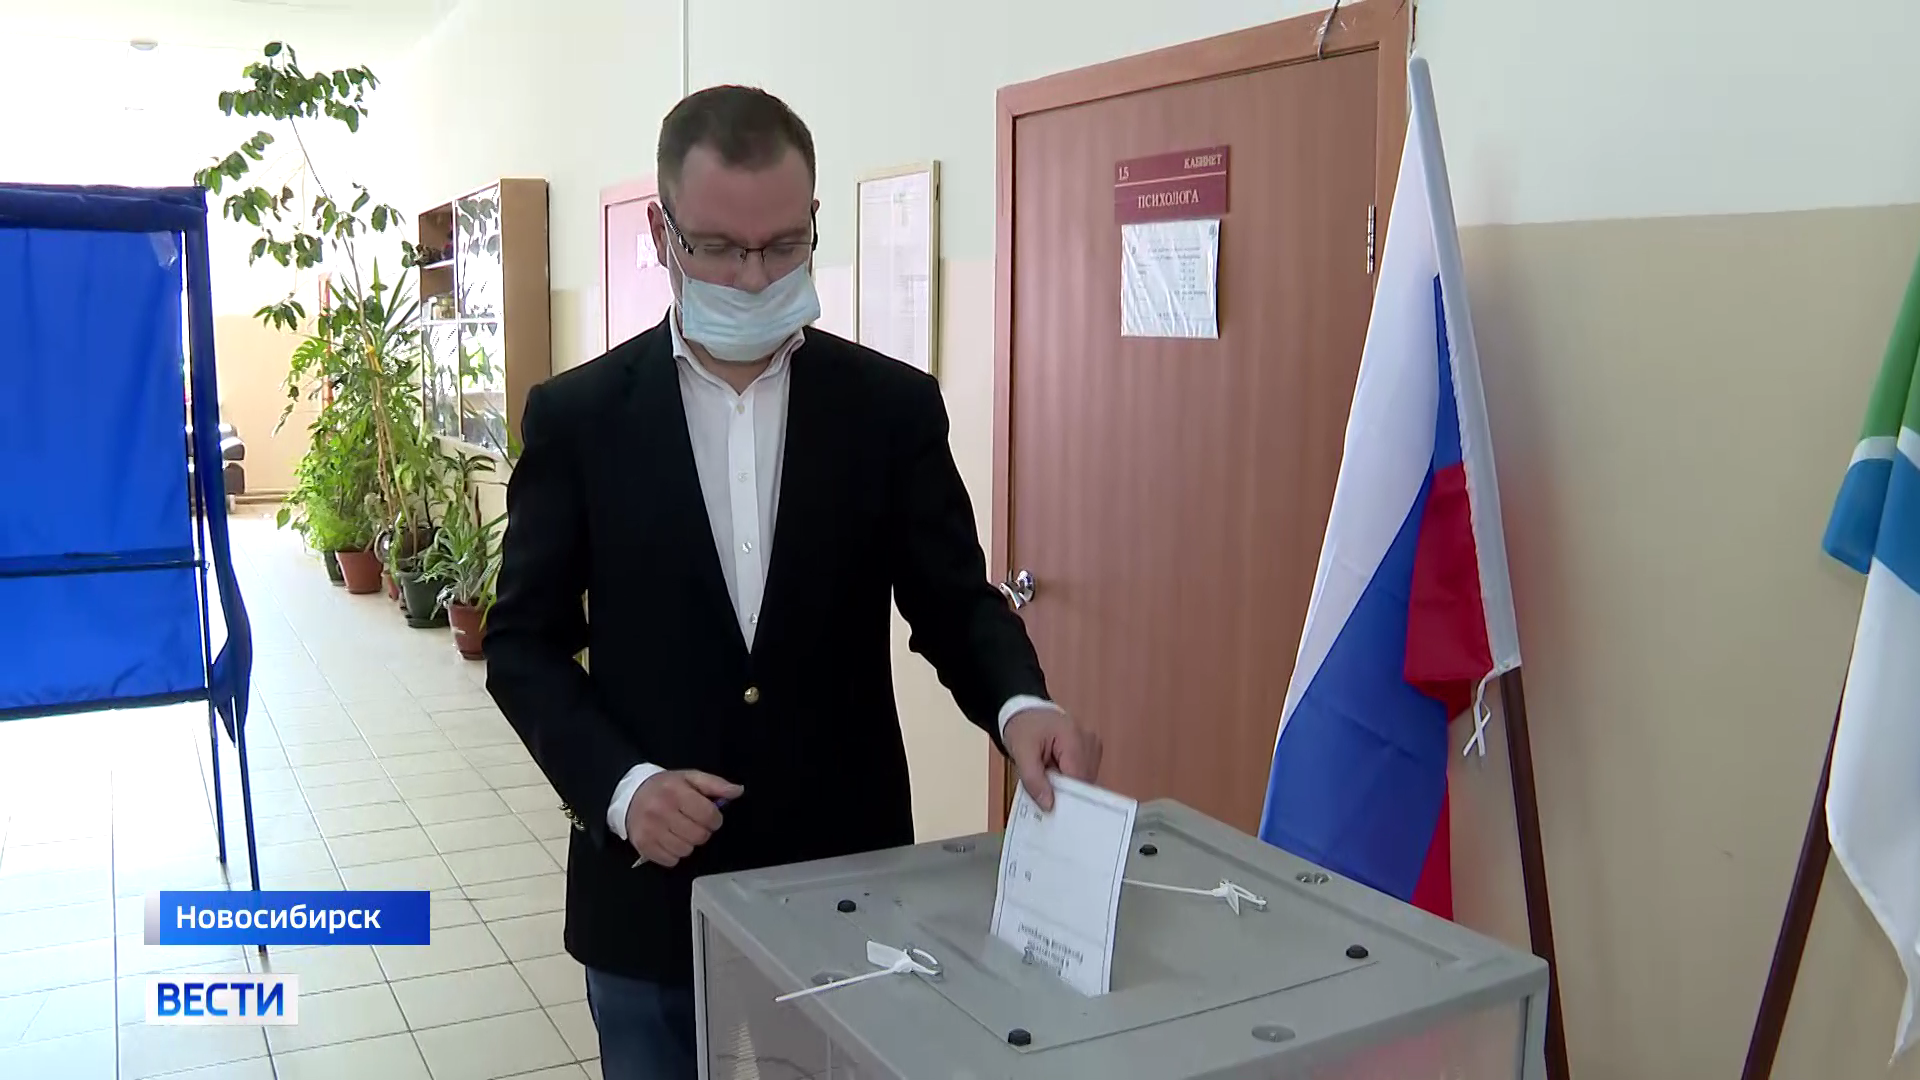 Знаменитый скрипач Михаил Симонян сделал свой выбор в голосовании по Конституции